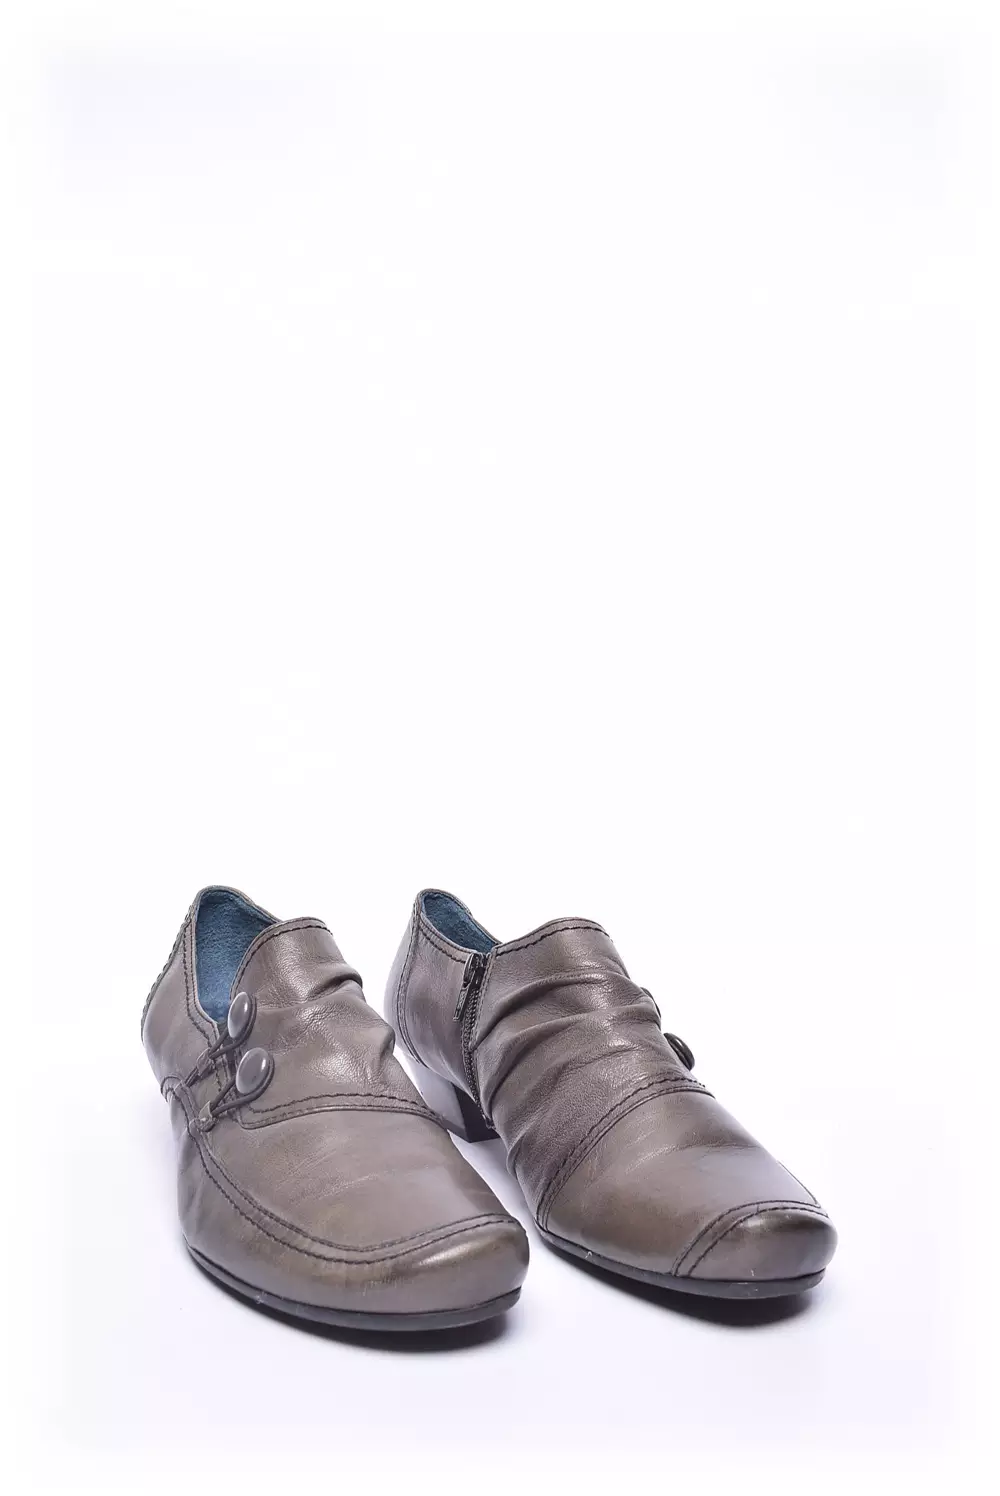 Pantofi dama  [2]